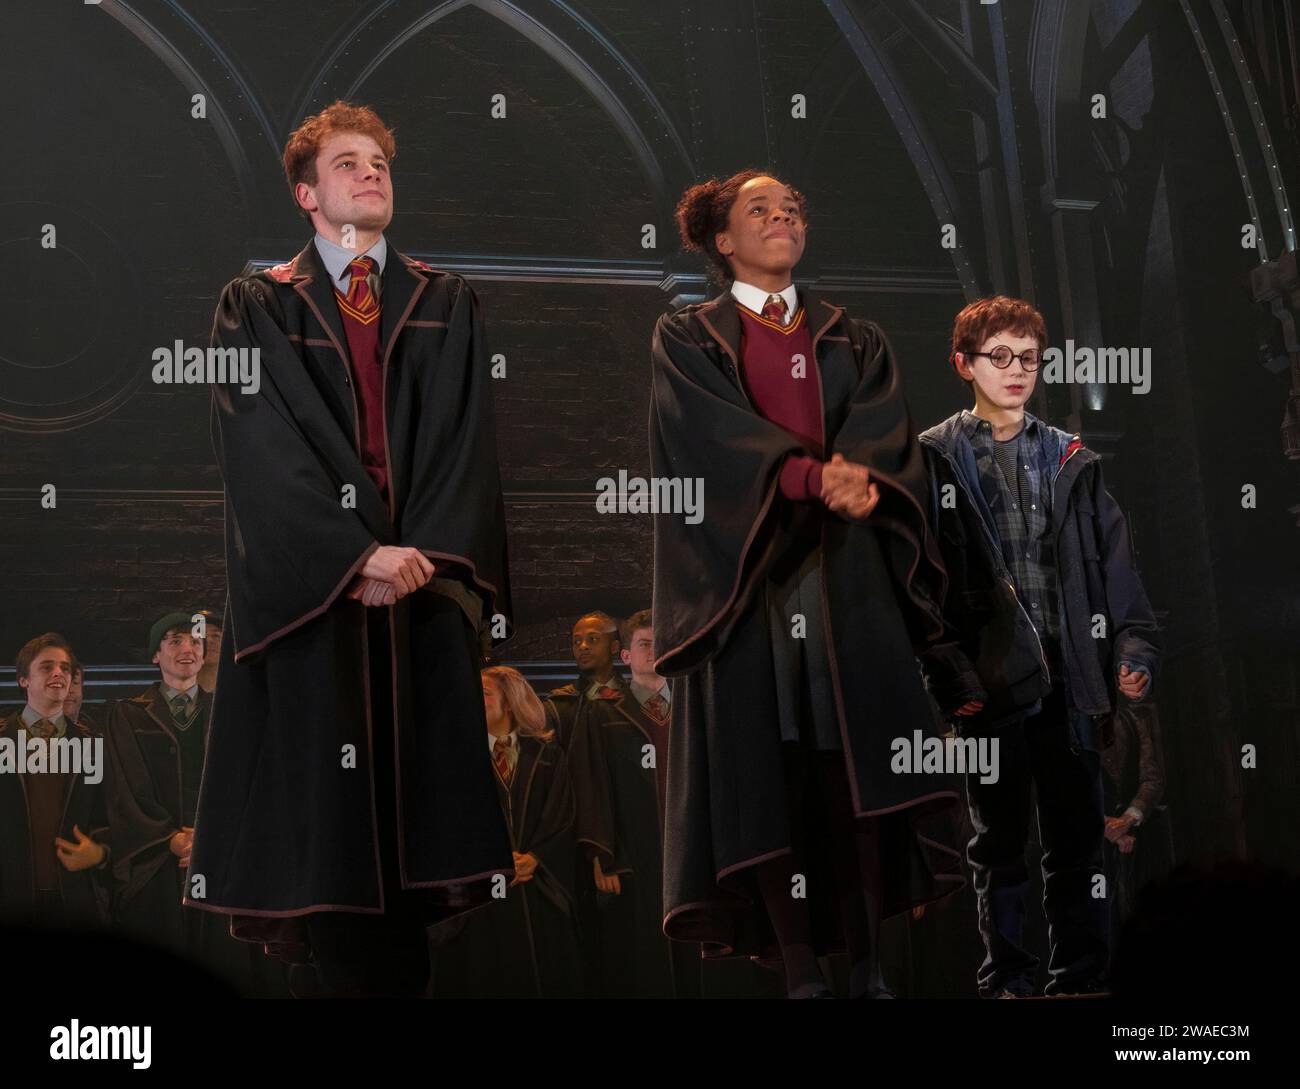 Ellis Rae dans le rôle d'Albus, Jade Orgugua dans celui d'Hermione, Col rideau, Harry Potter et l'enfant maudit, Palace Theatre, Londres, Royaume-Uni Banque D'Images